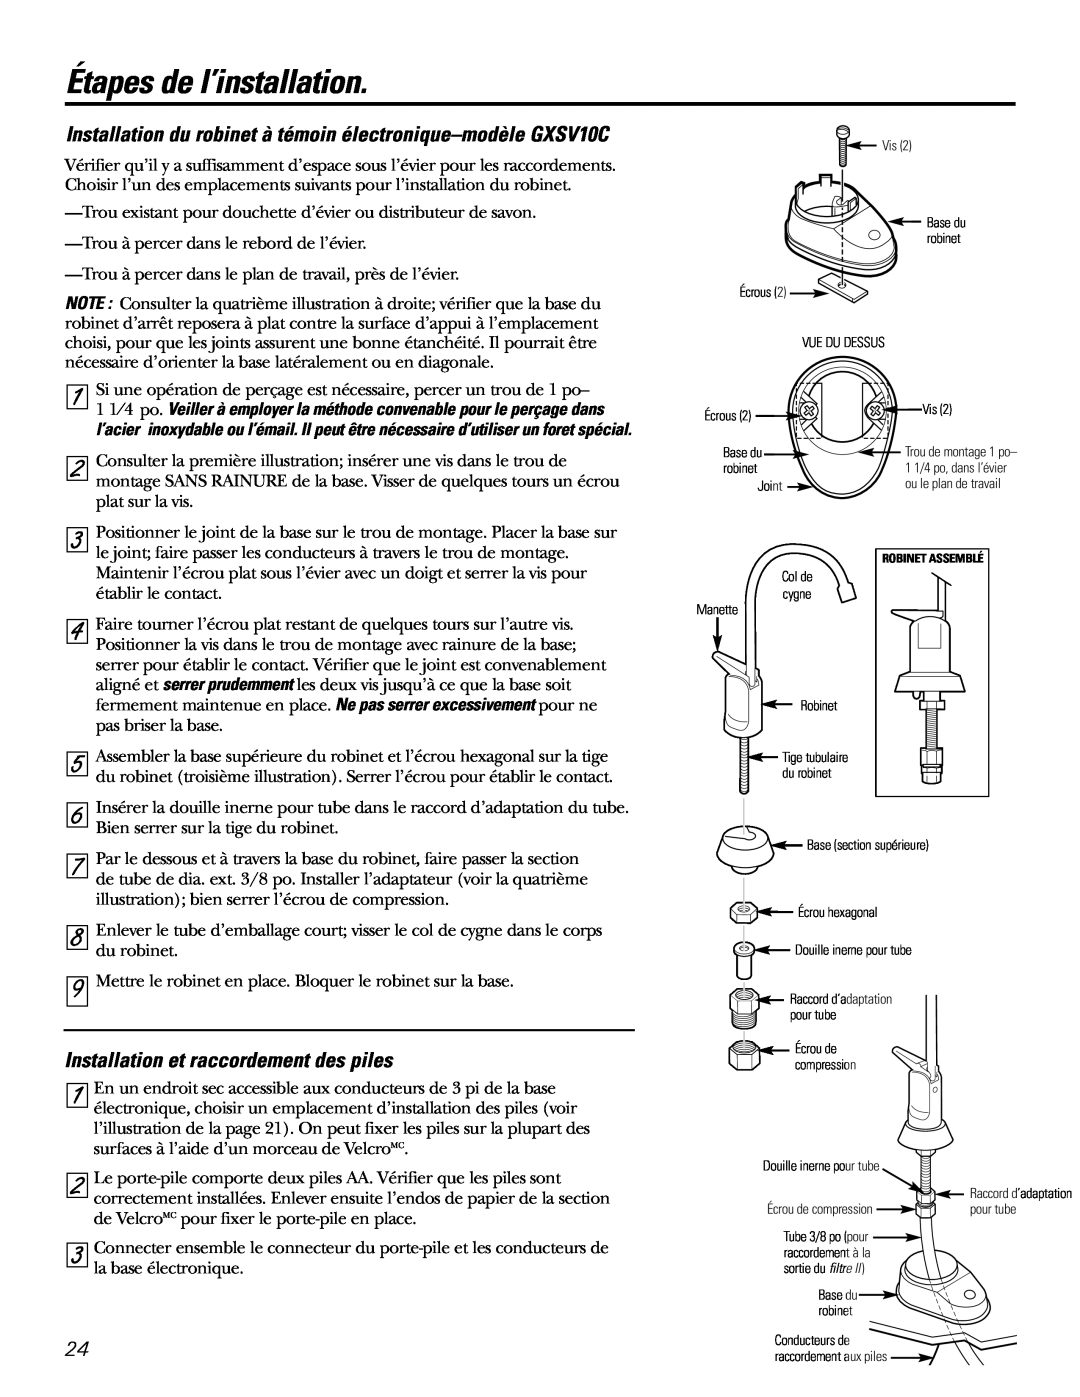 GE GXSL03C Installation du robinet à témoin électronique-modèle GXSV10C, Installation et raccordement des piles 